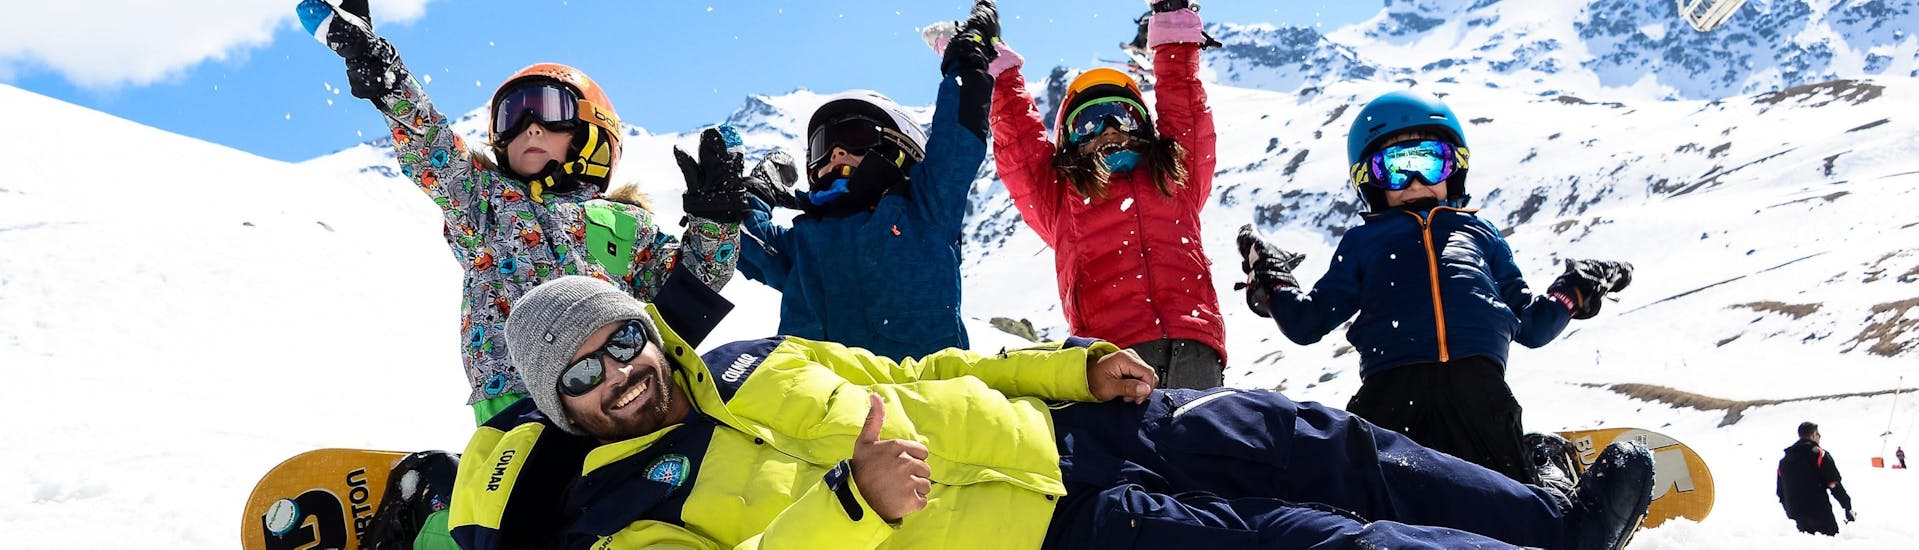 Des enfants heureux participents à un cours de snowboard avec l'école de ski Prosneige Val d'Isère situé dans la station de ski Val d'Isère.